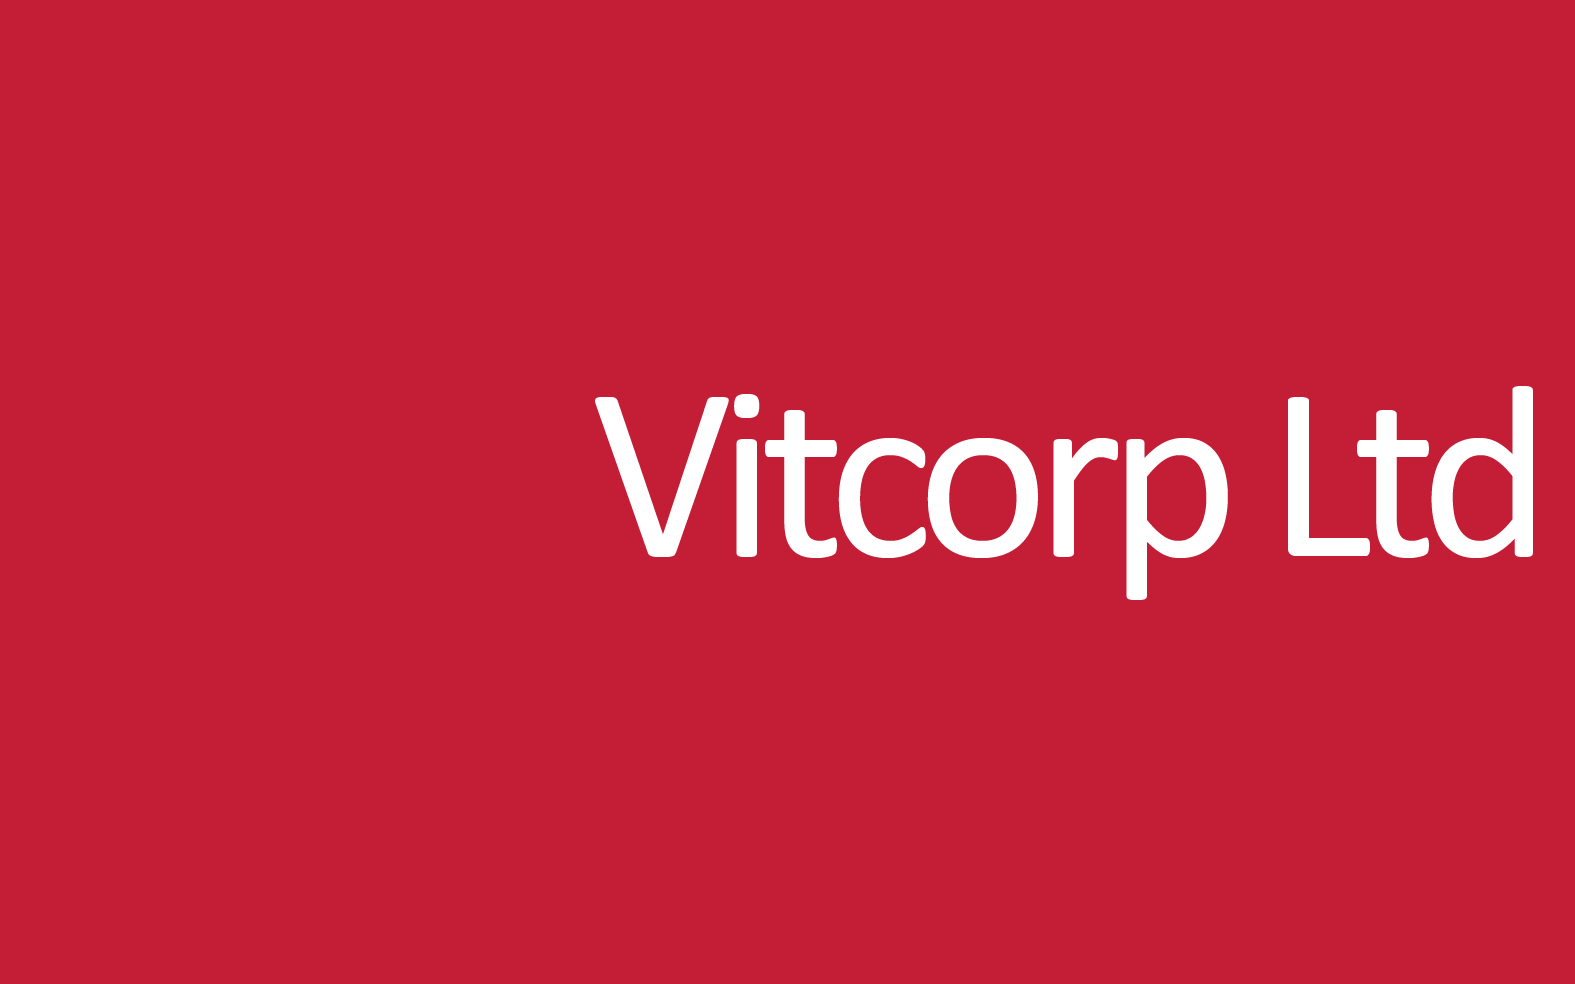 Vitcorp Limited